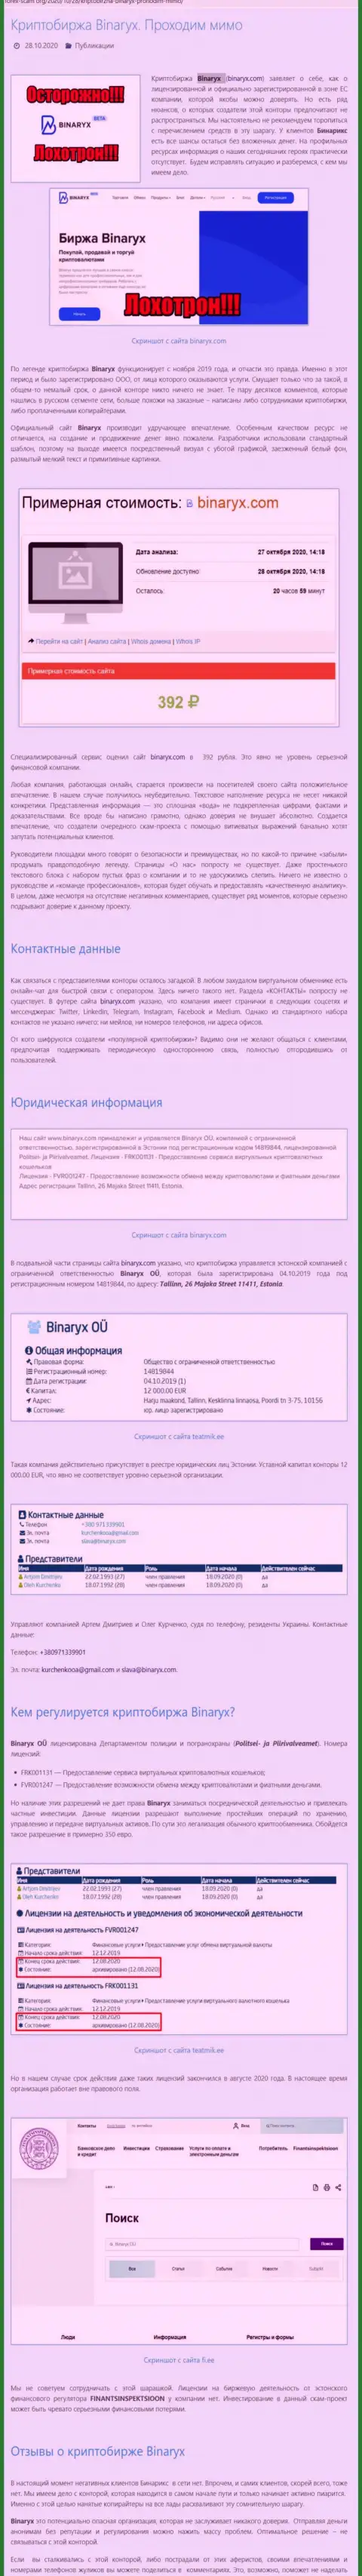 Binaryx Com - это ШУЛЕРА !!! Воровство денежных активов гарантируют (обзор конторы)